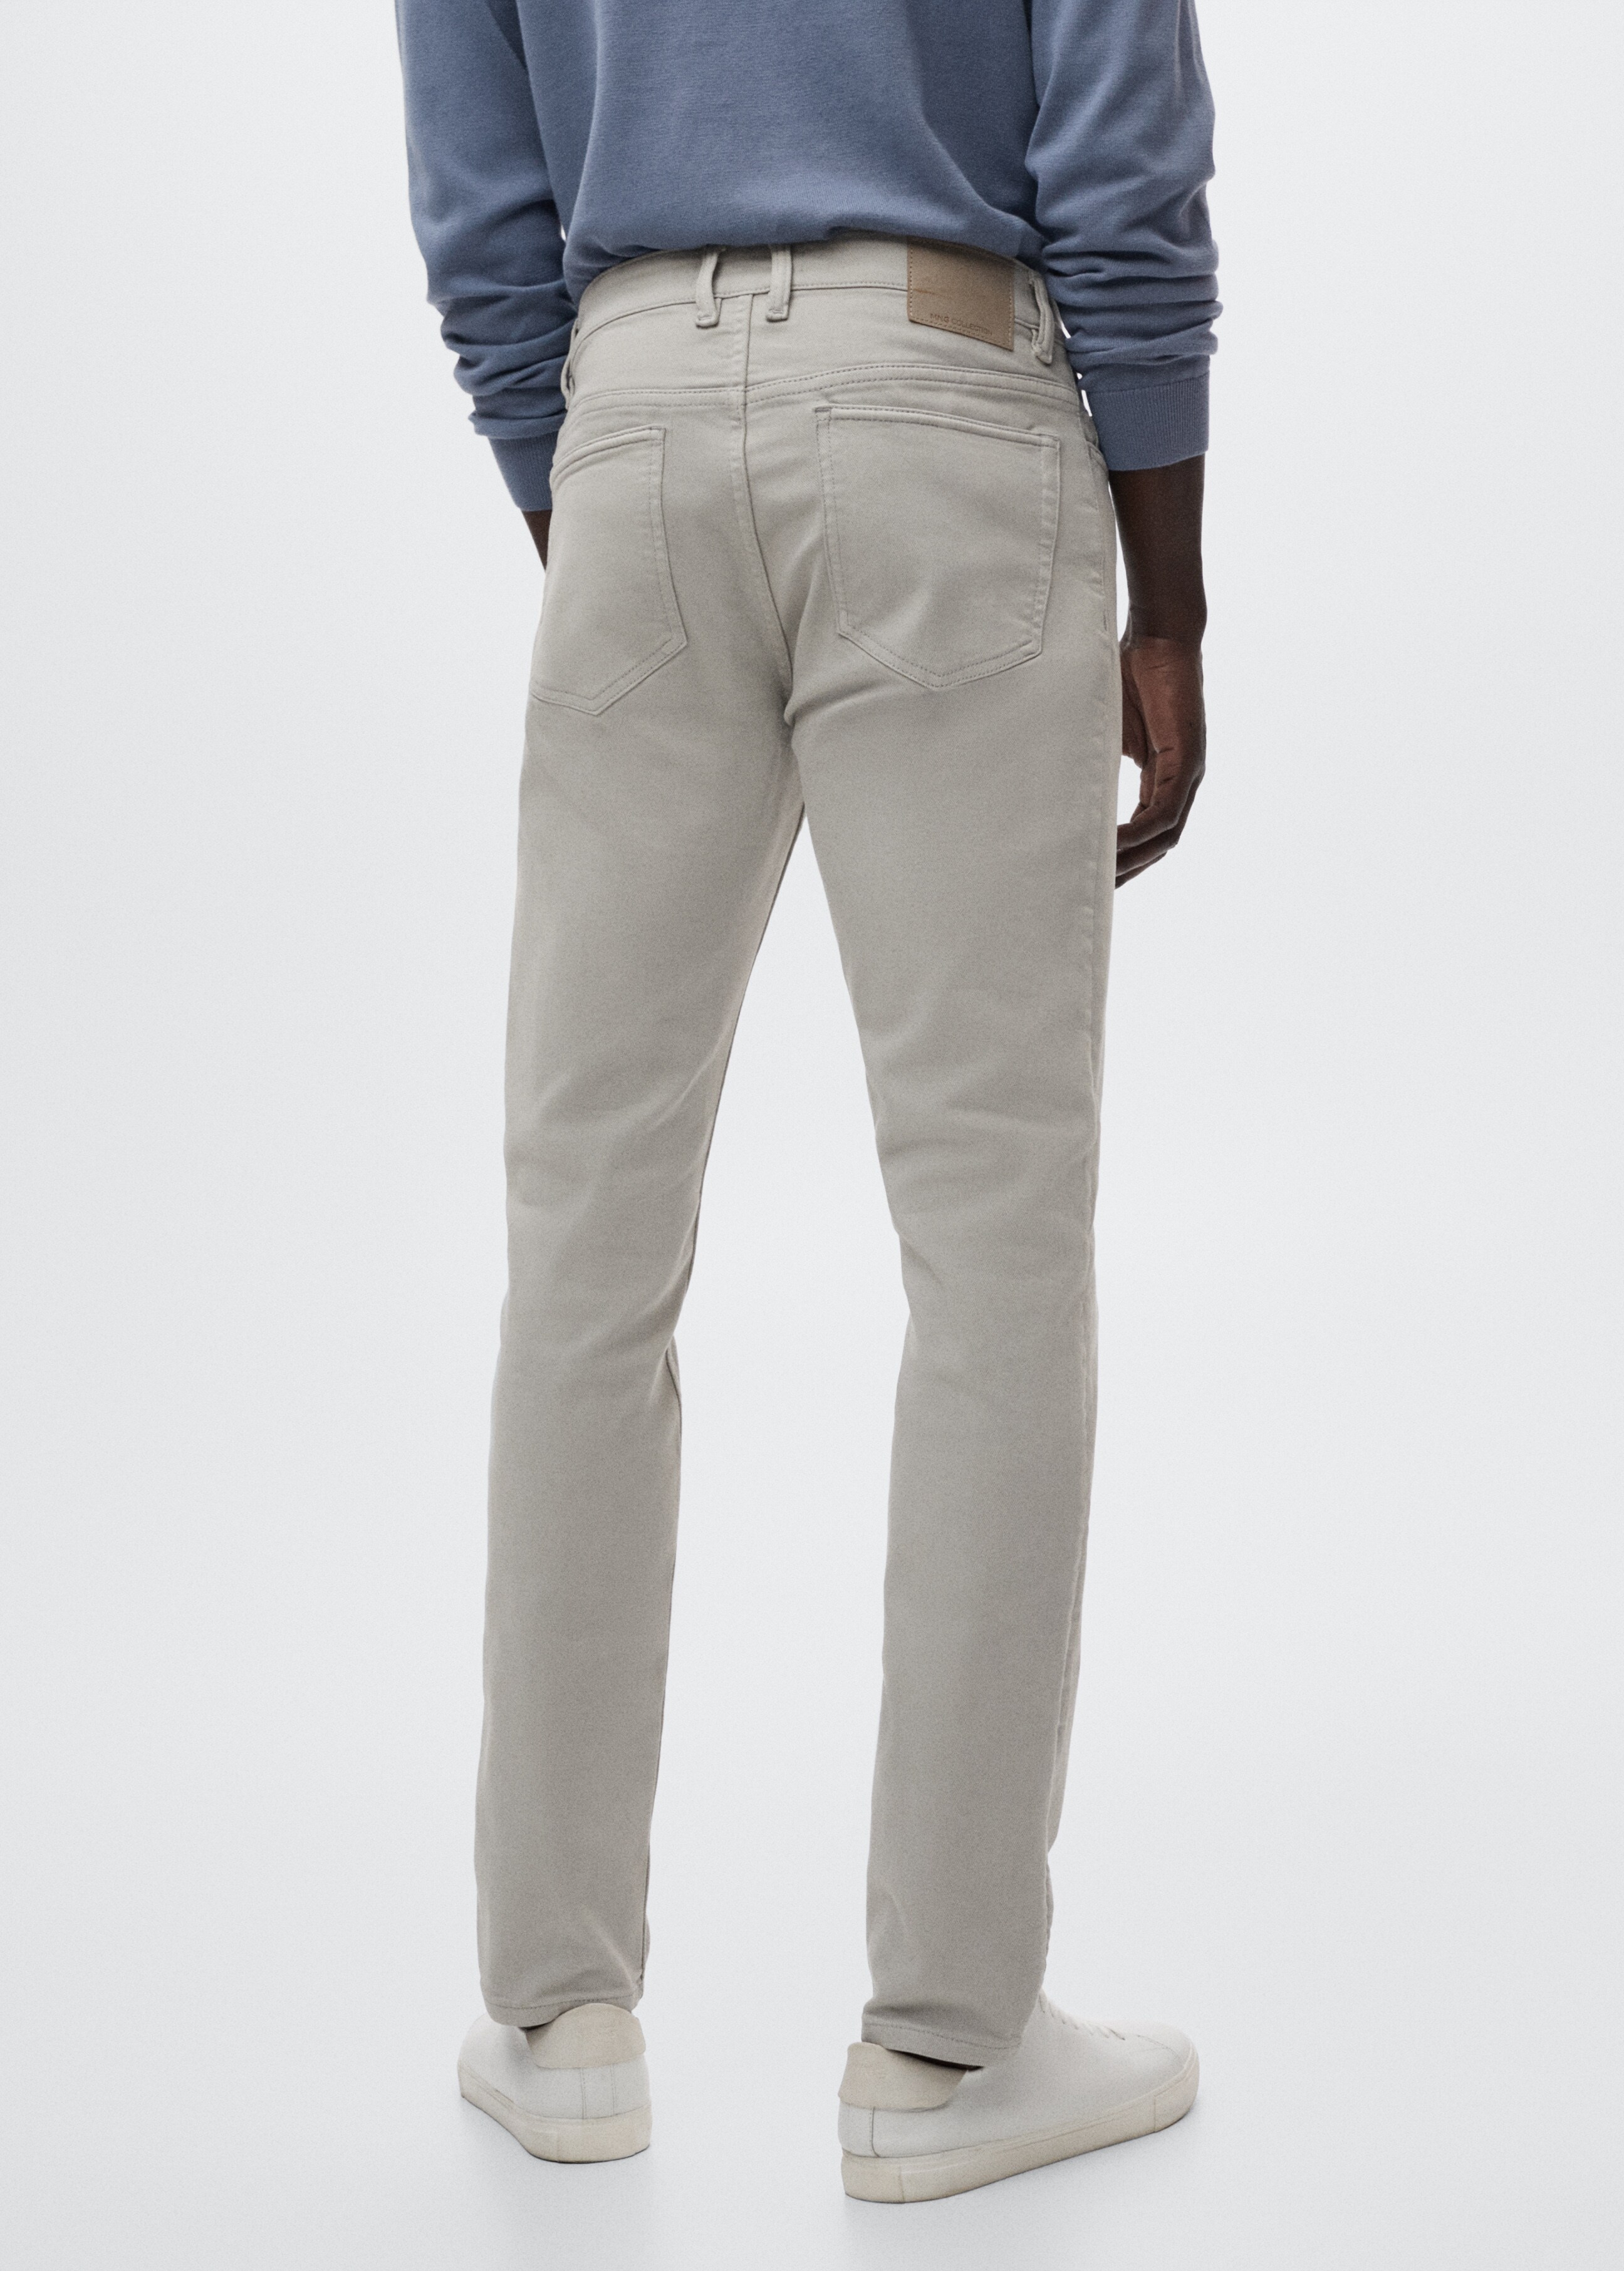 Jeans slim fit color - Reverso del artículo